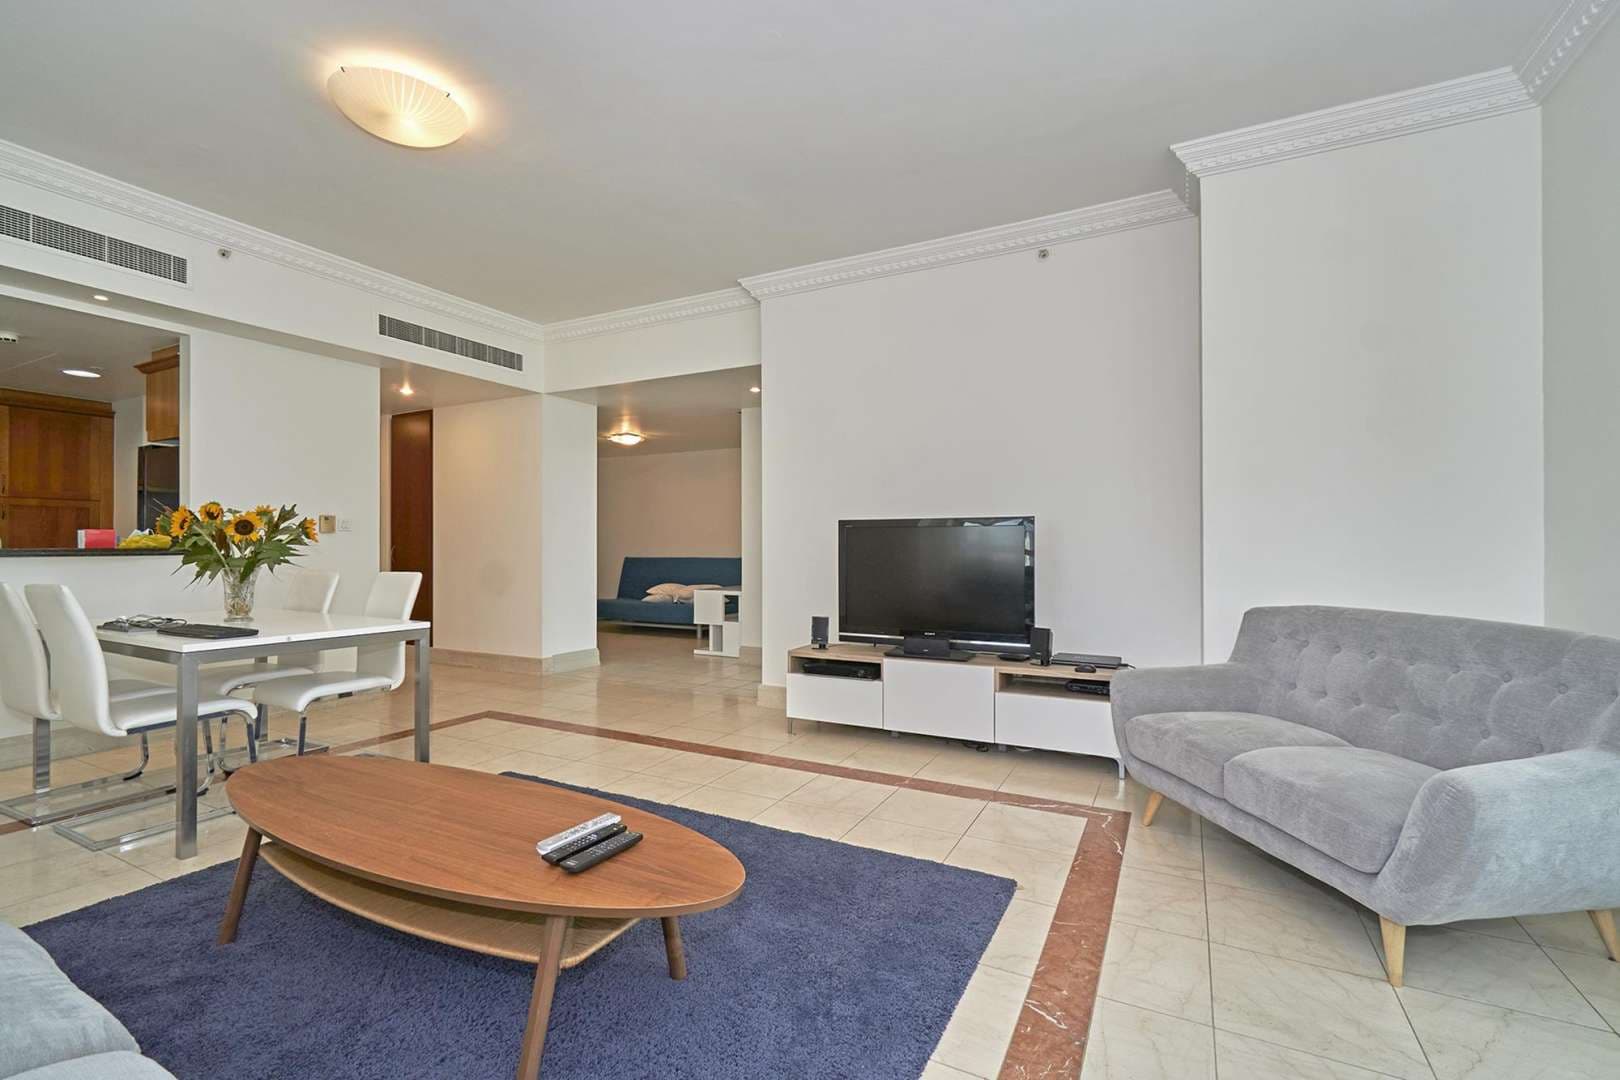 2 Bedroom Apartment For Rent Al Mesk Tower Lp06182 1baf0bf3dc8d8000.jpg